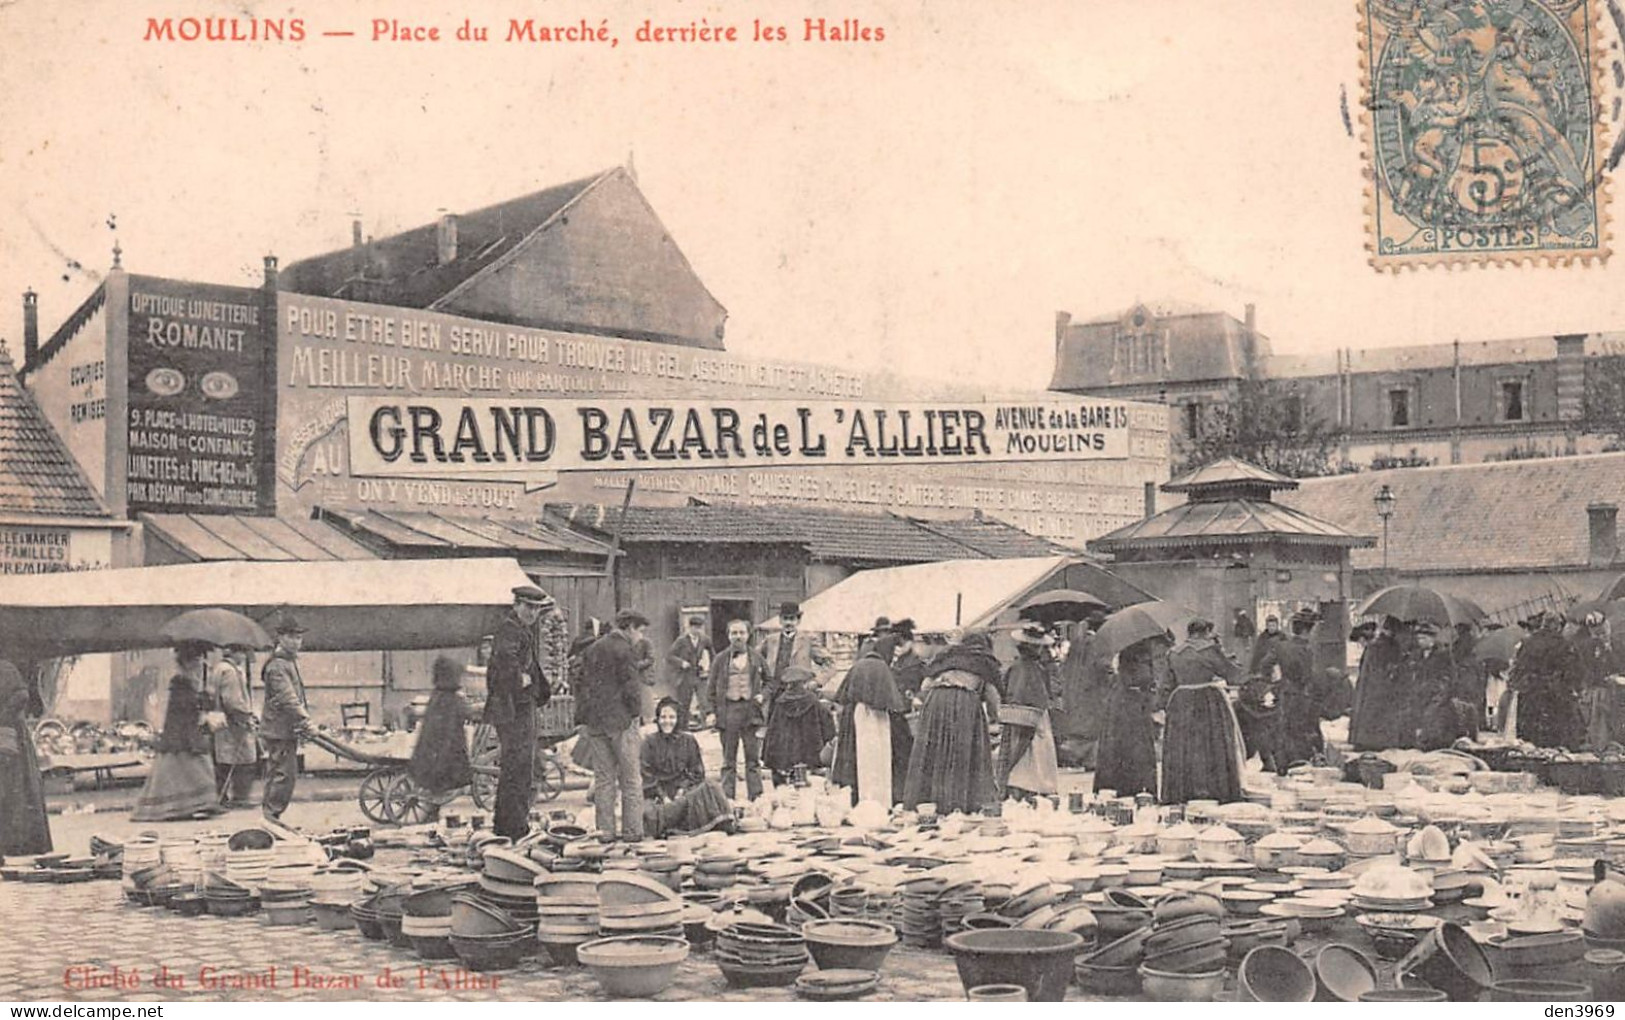 MOULINS (Allier) - Place Du Marché, Derrière Les Halles - Gd Bazar De L'Allier, 13 Av De La Gare - Voyagé 1907 (2 Scans) - Moulins